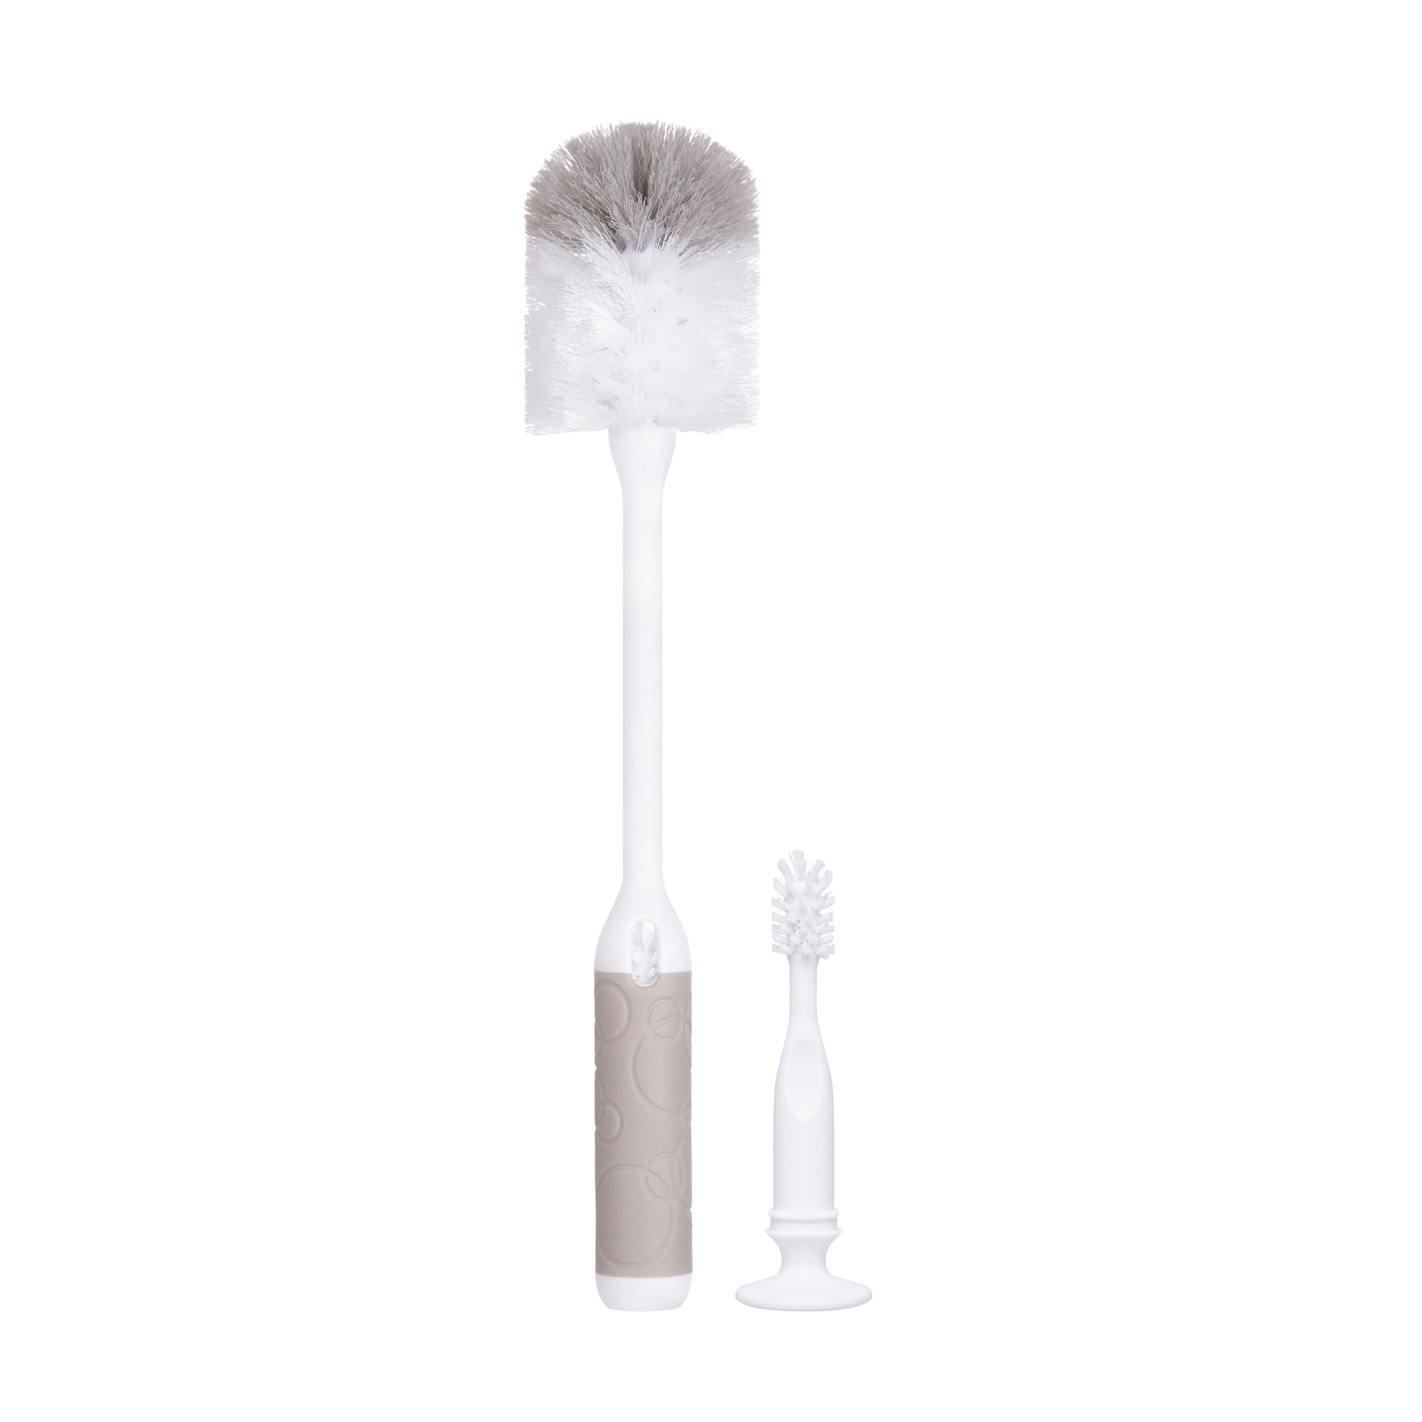 Momeasy Bottle Brush Set B-45904 – Baby Nest Boutique